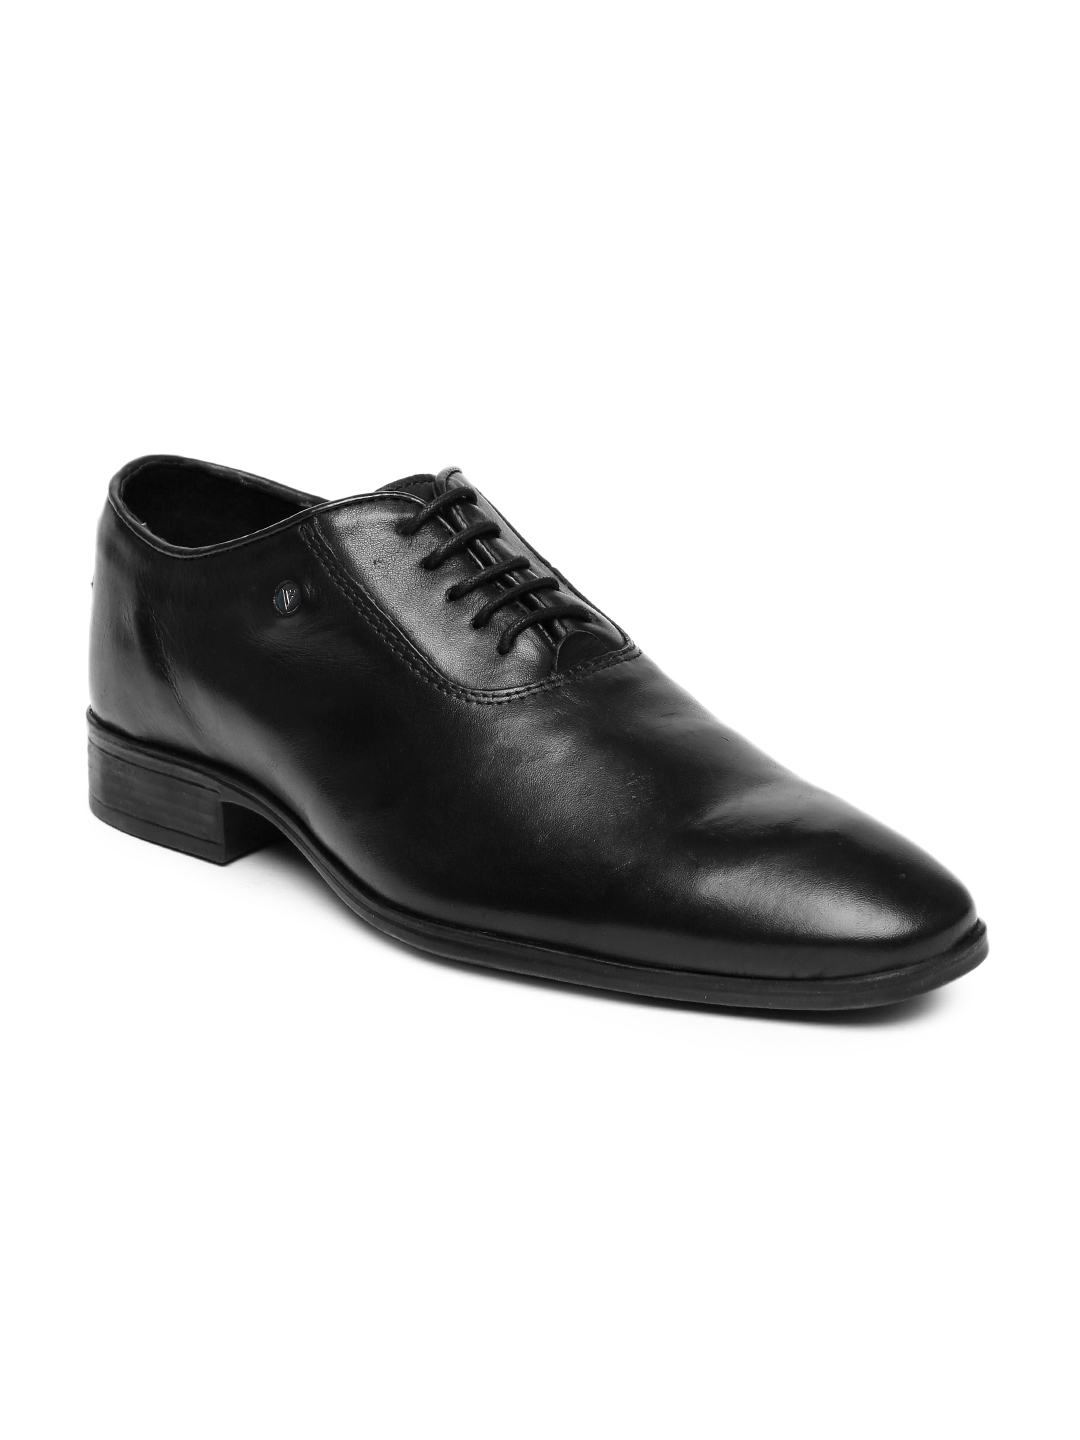 Buy Van Heusen Men Black Leather Oxford Formal Shoes - Formal Shoes for ...